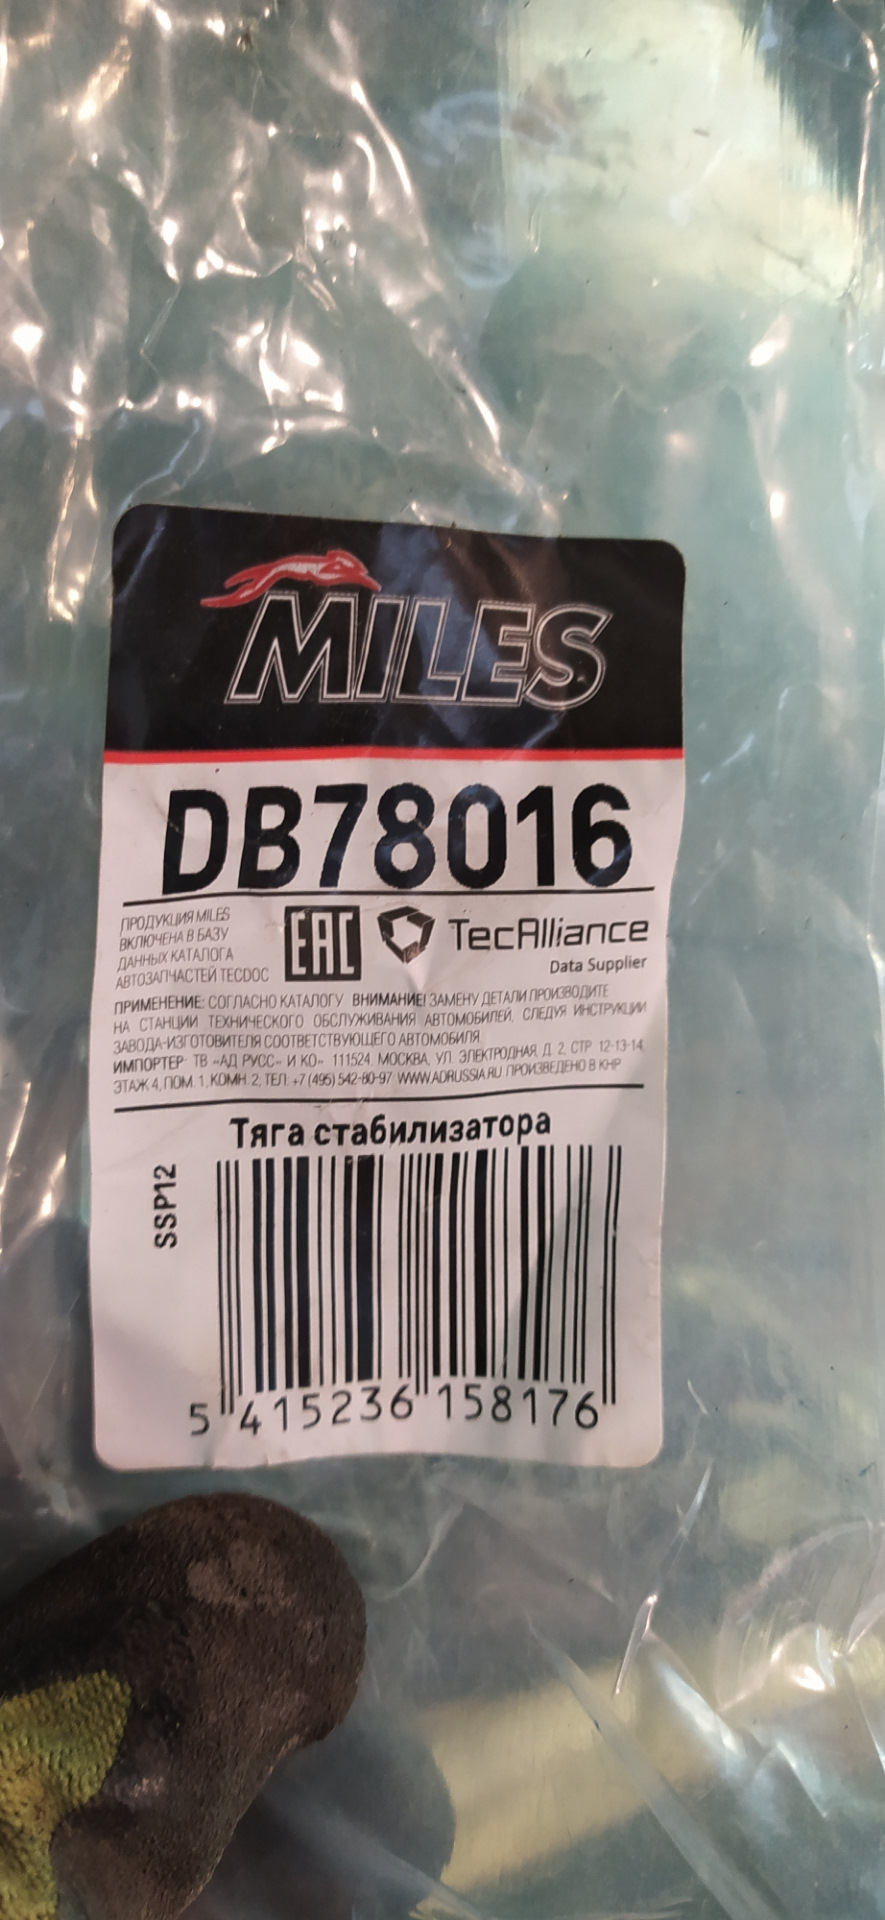 Miles db78016.